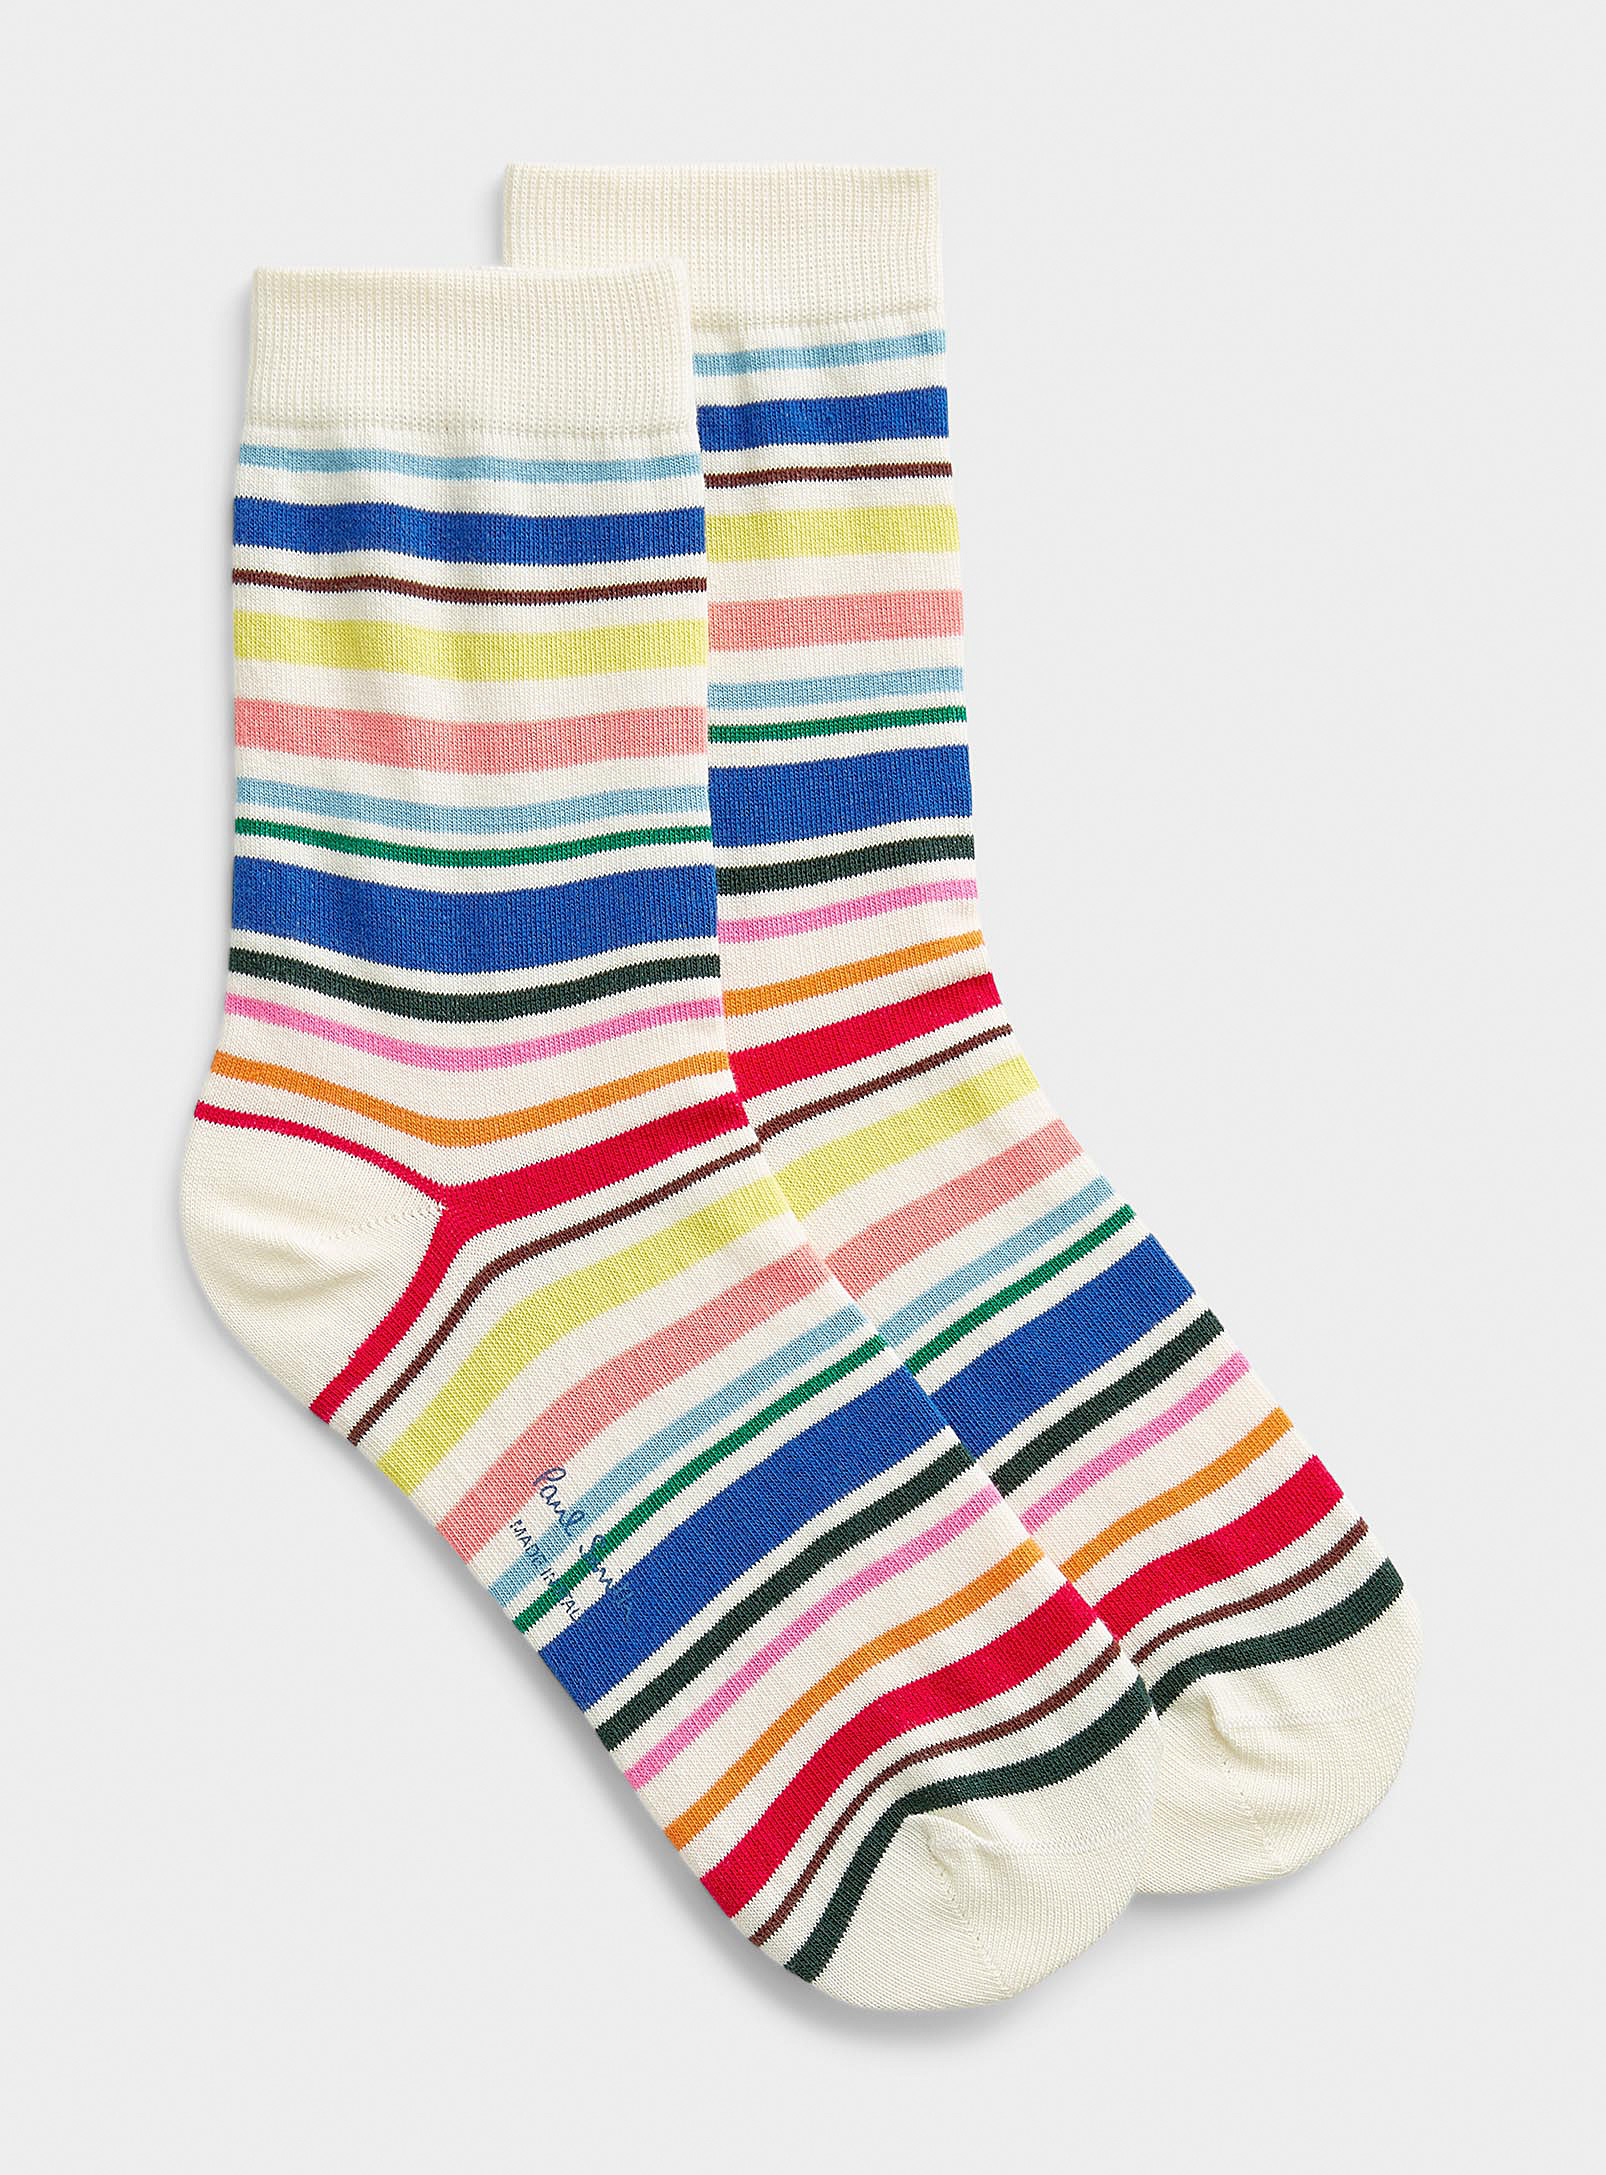 Paul Smith Colourful Stripe Sock In Multi